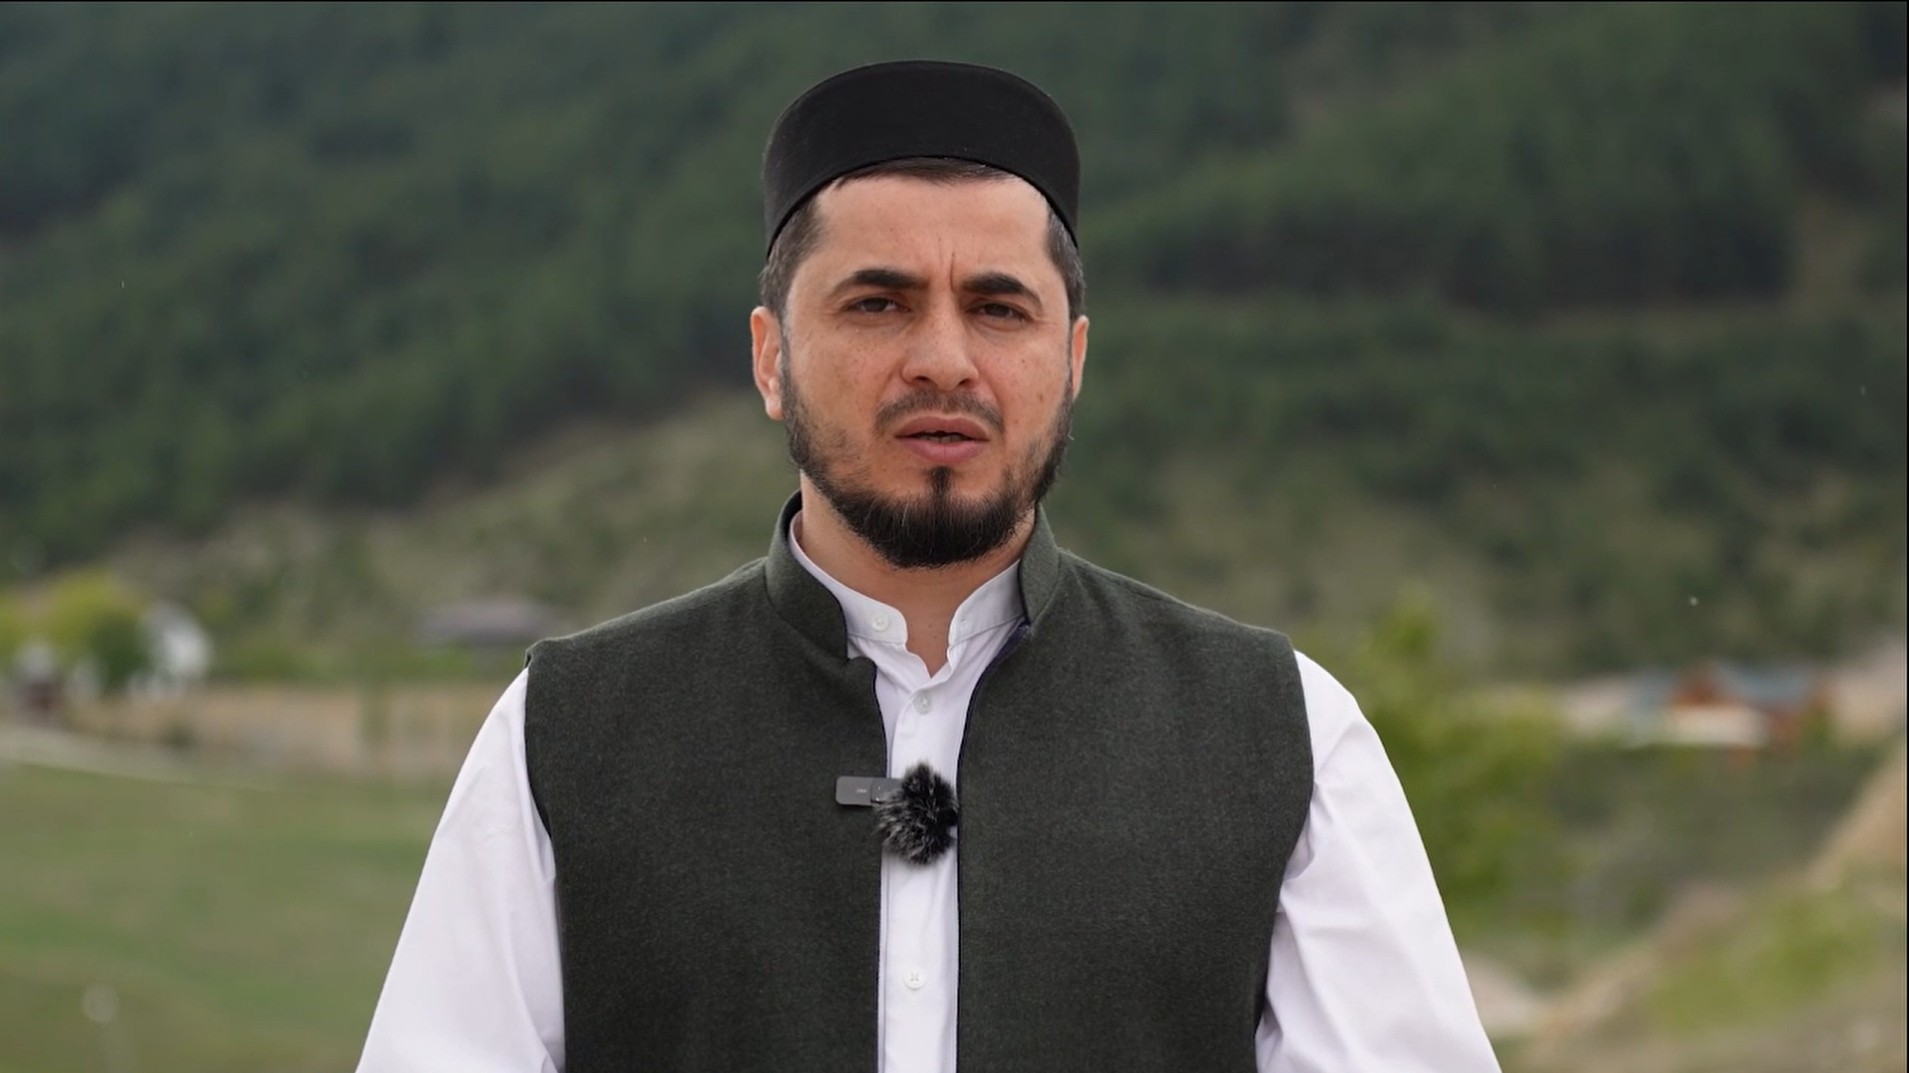 Заместитель муфтия Дагестана Абдулла Салимов: «Пусть каждый мусульманин будет светилом благоразумия и толерантности для всех, кто его окружает»